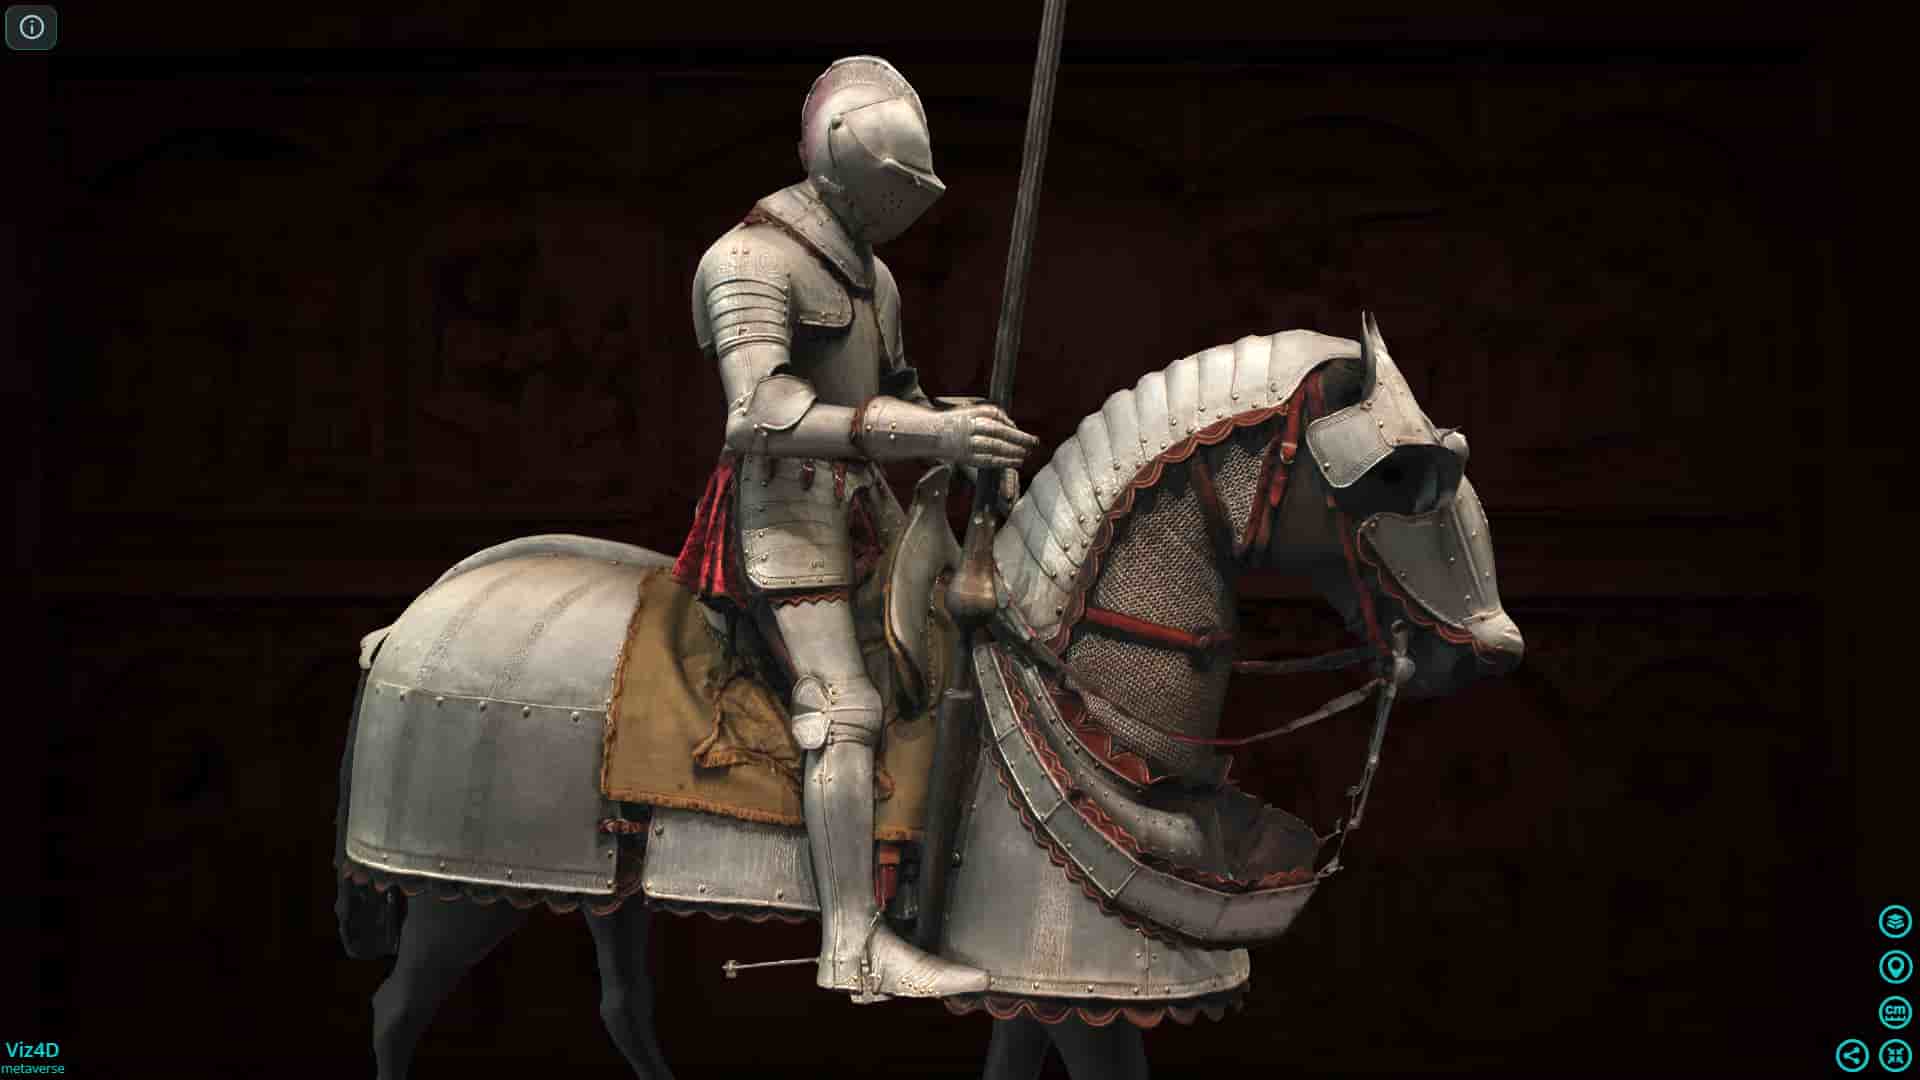 Giáp trụ kỵ binh thế kỷ 16 - Bảo tàng Cleveland.